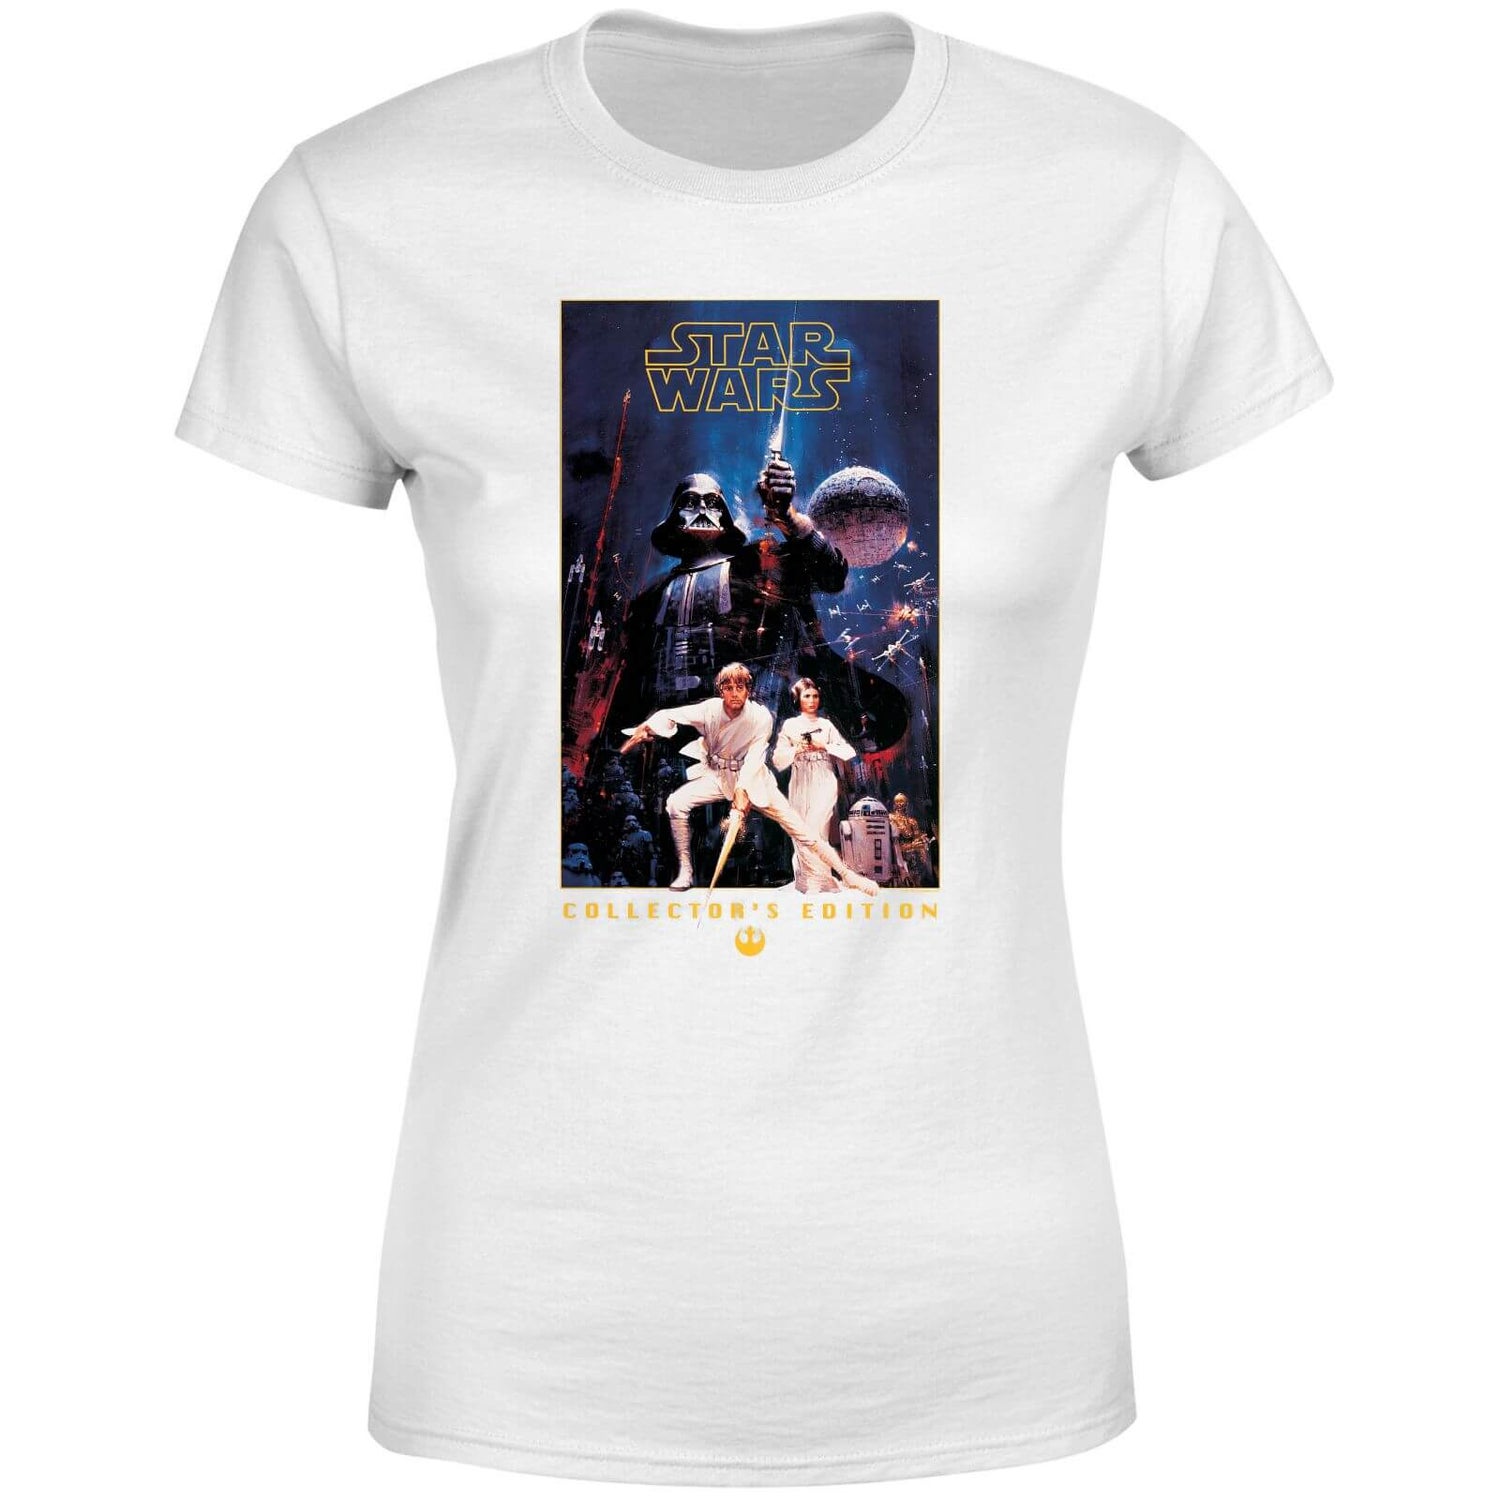 Bedenken volwassen Omringd Star Wars Collector's Edition dames t-shirt - Wit | Zavvi.nl